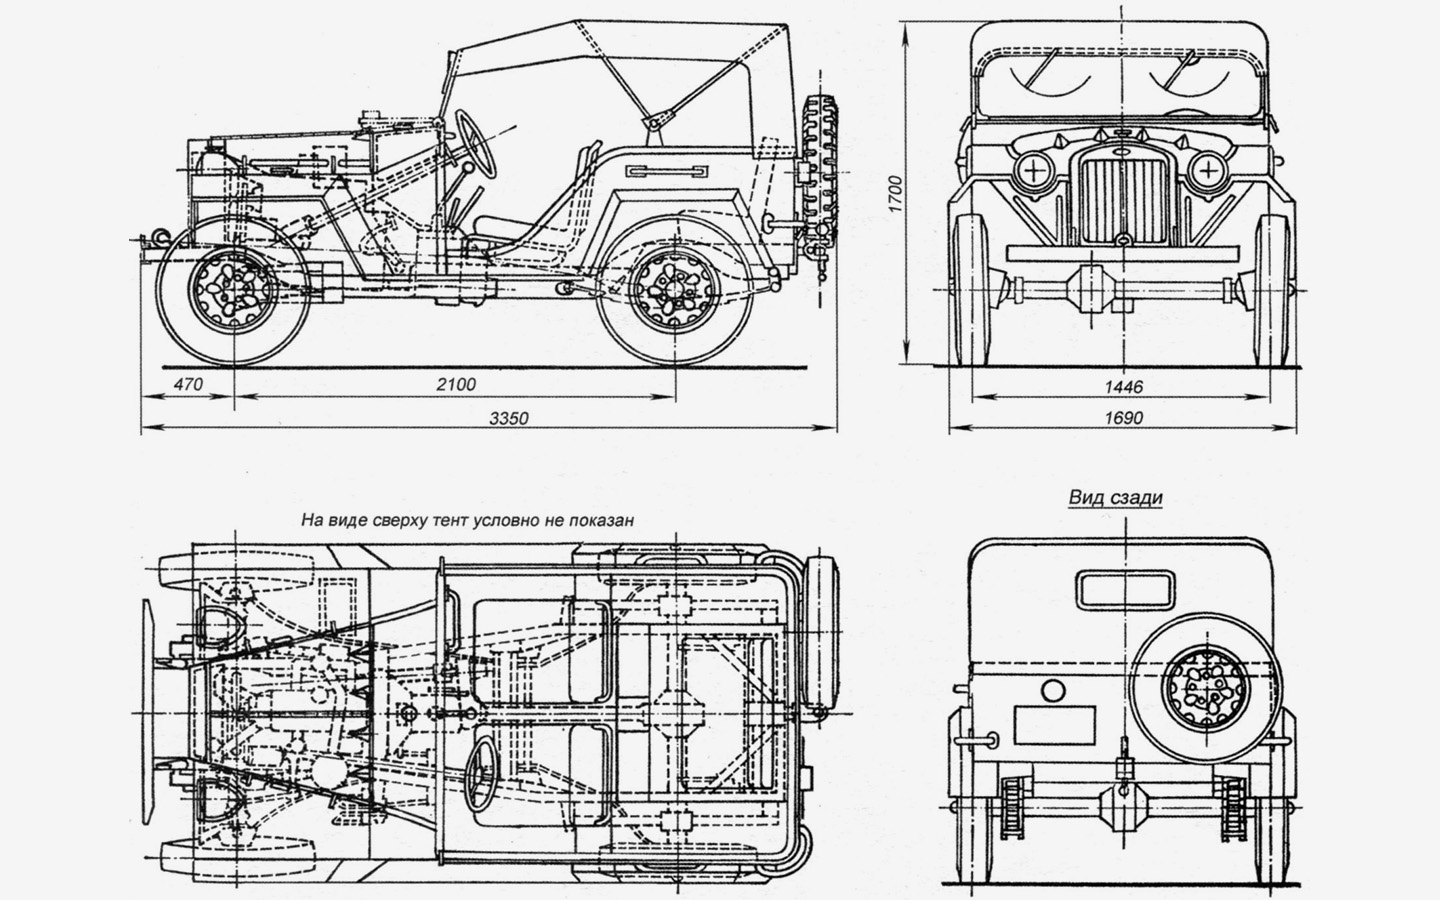 Стальной кузов ГАЗ-67 устанавливался на раму с лонжеронами закрытого типа. Двигатель, МКП4 и раздаточная коробка находятся в передней части автомобиля. Привод на заднюю ось с помощью карданного вала. Передний мост подключался водителем с помощью рычага. Подвеска всех колес зависимая рессорная. Для перевозки большого количества инструментов использовались четыре небольших ящика на передних крыльях, а также по бокам от заднего сиденья. Шины с грунтозацепами типа &laquo;расчлененная елка&raquo; размером 6,50-16.